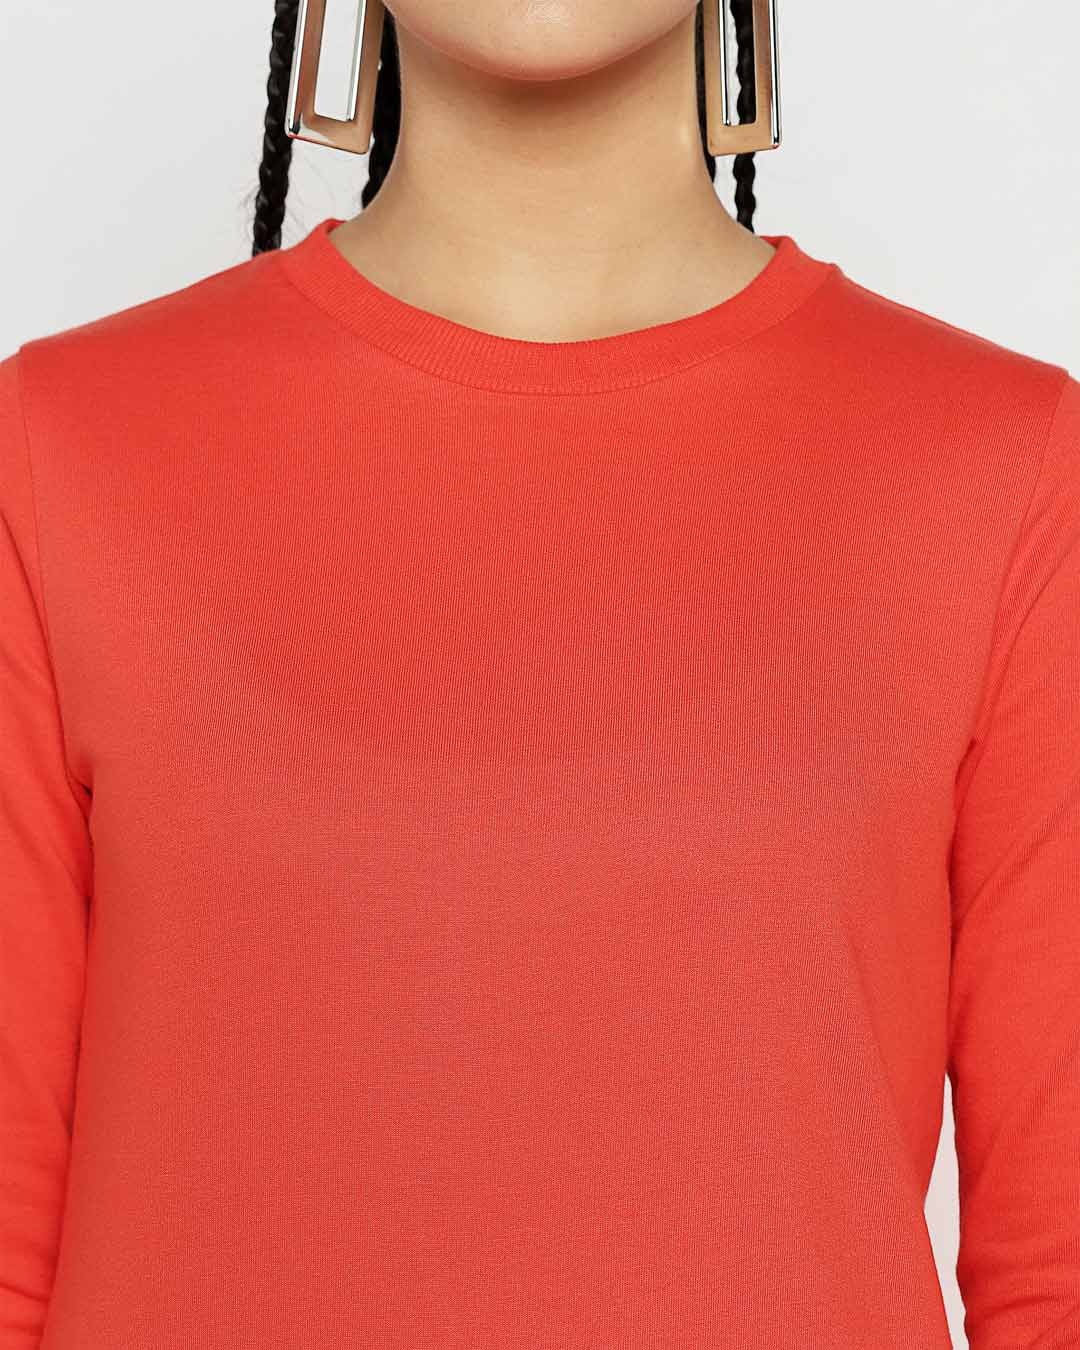 Shop Smoke Red Fleece Sweatshirt